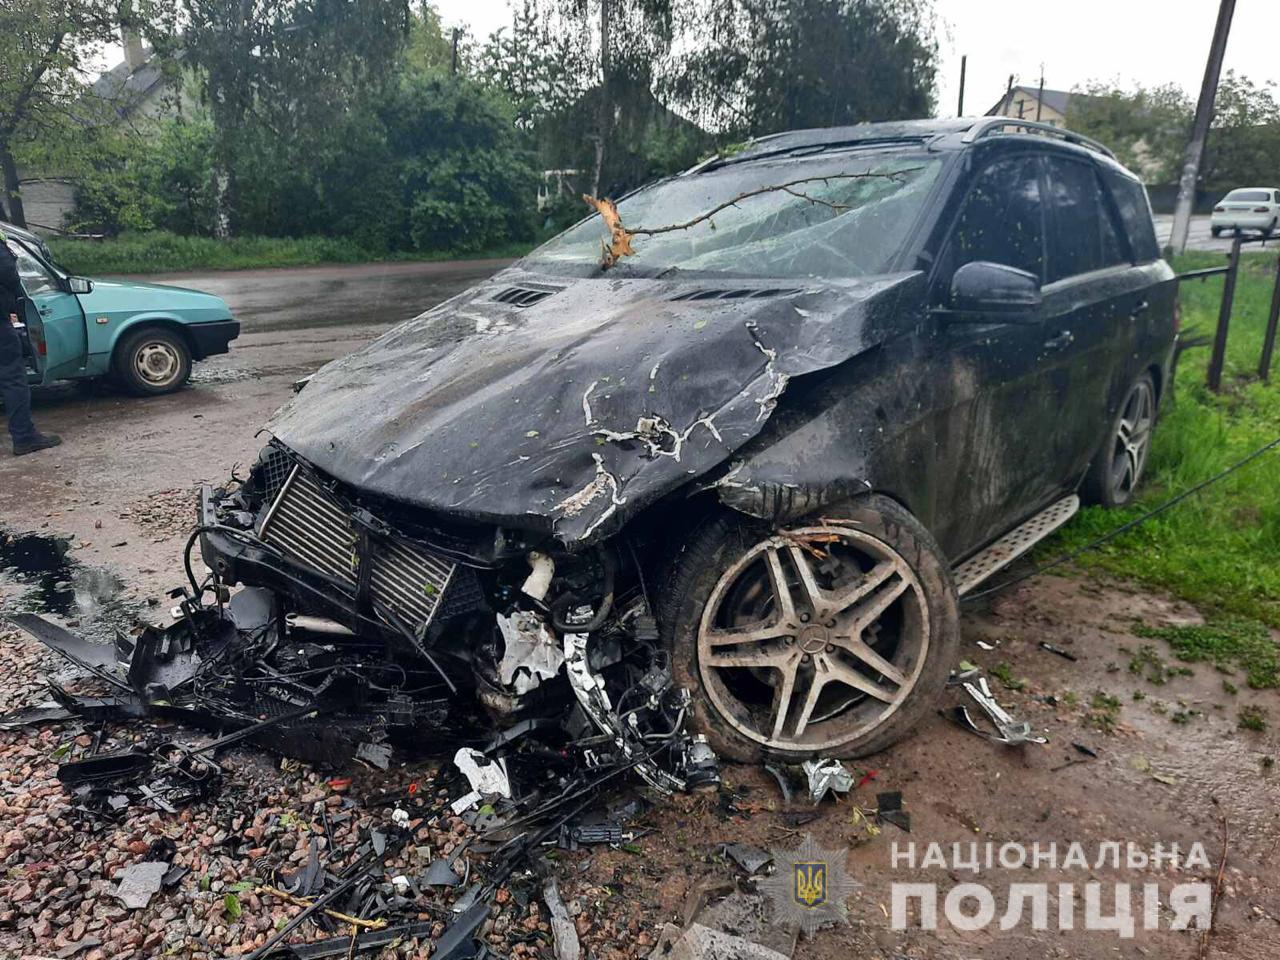 Под Харьковом машина вылетела с дороги: есть пострадавшие (фото)